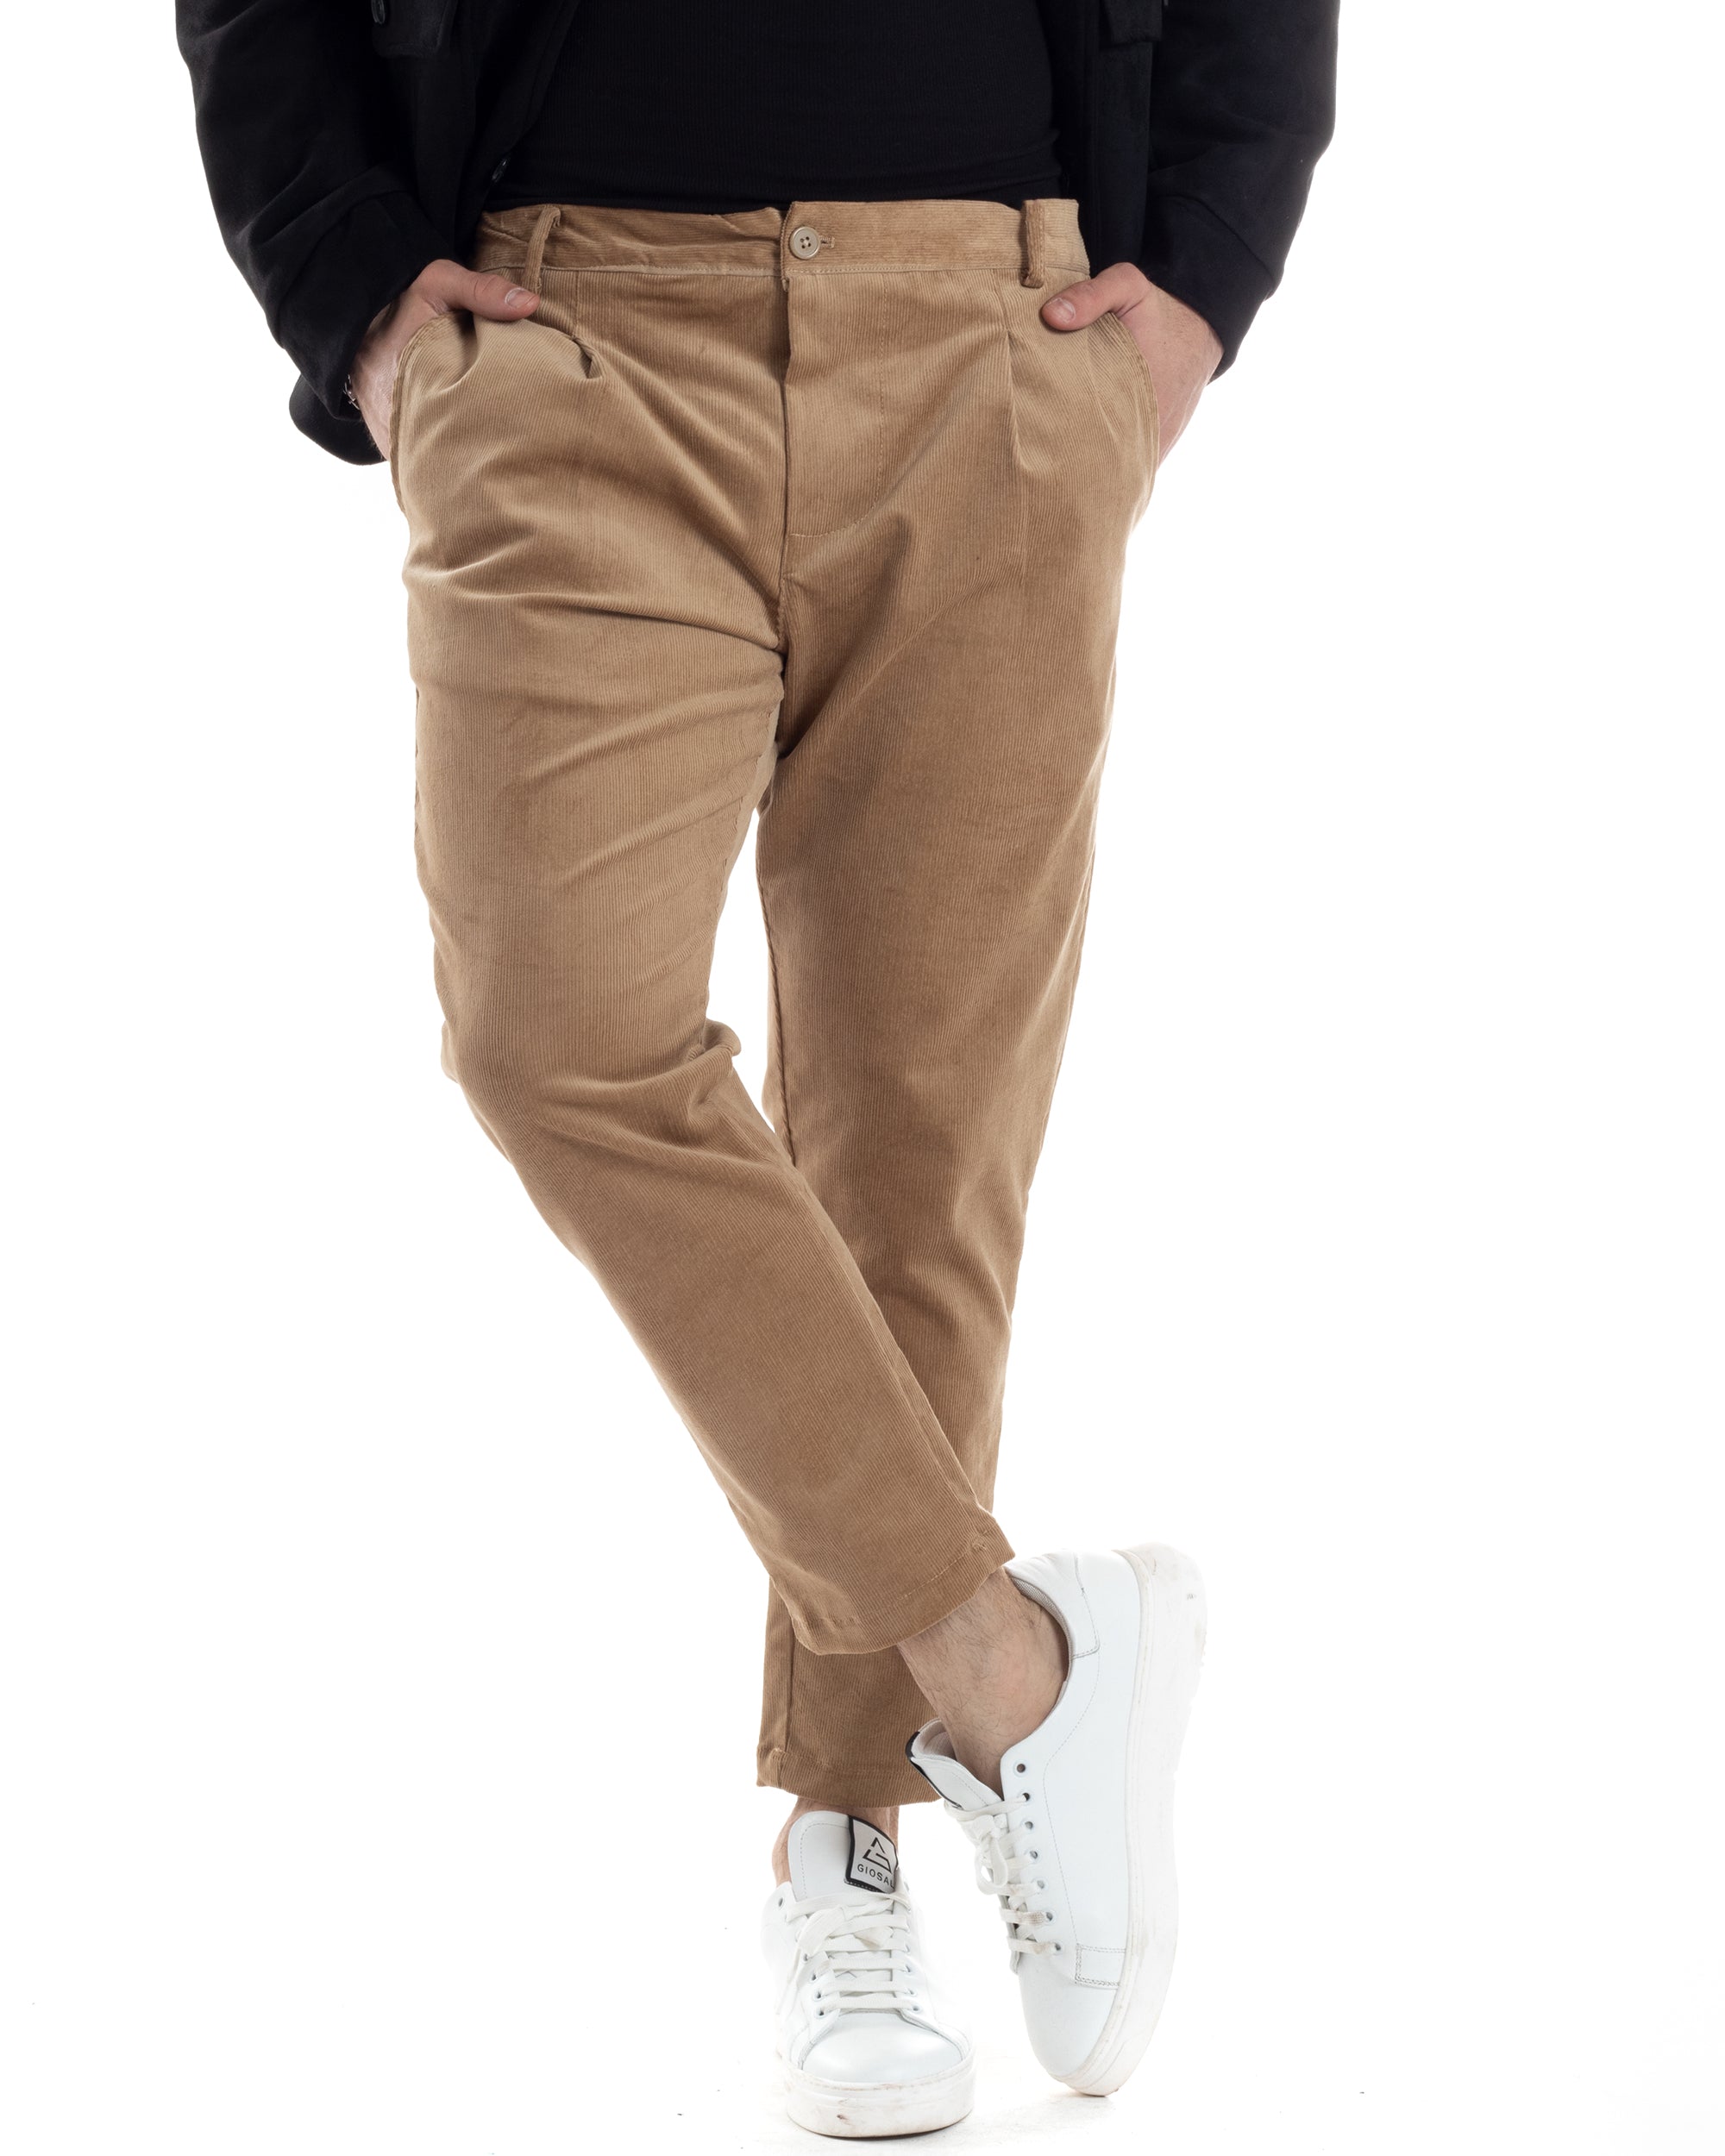 Pantaloni Uomo Tasca America Con Pinces Classico Velluto Costine Beige Casual GIOSAL-P6031A